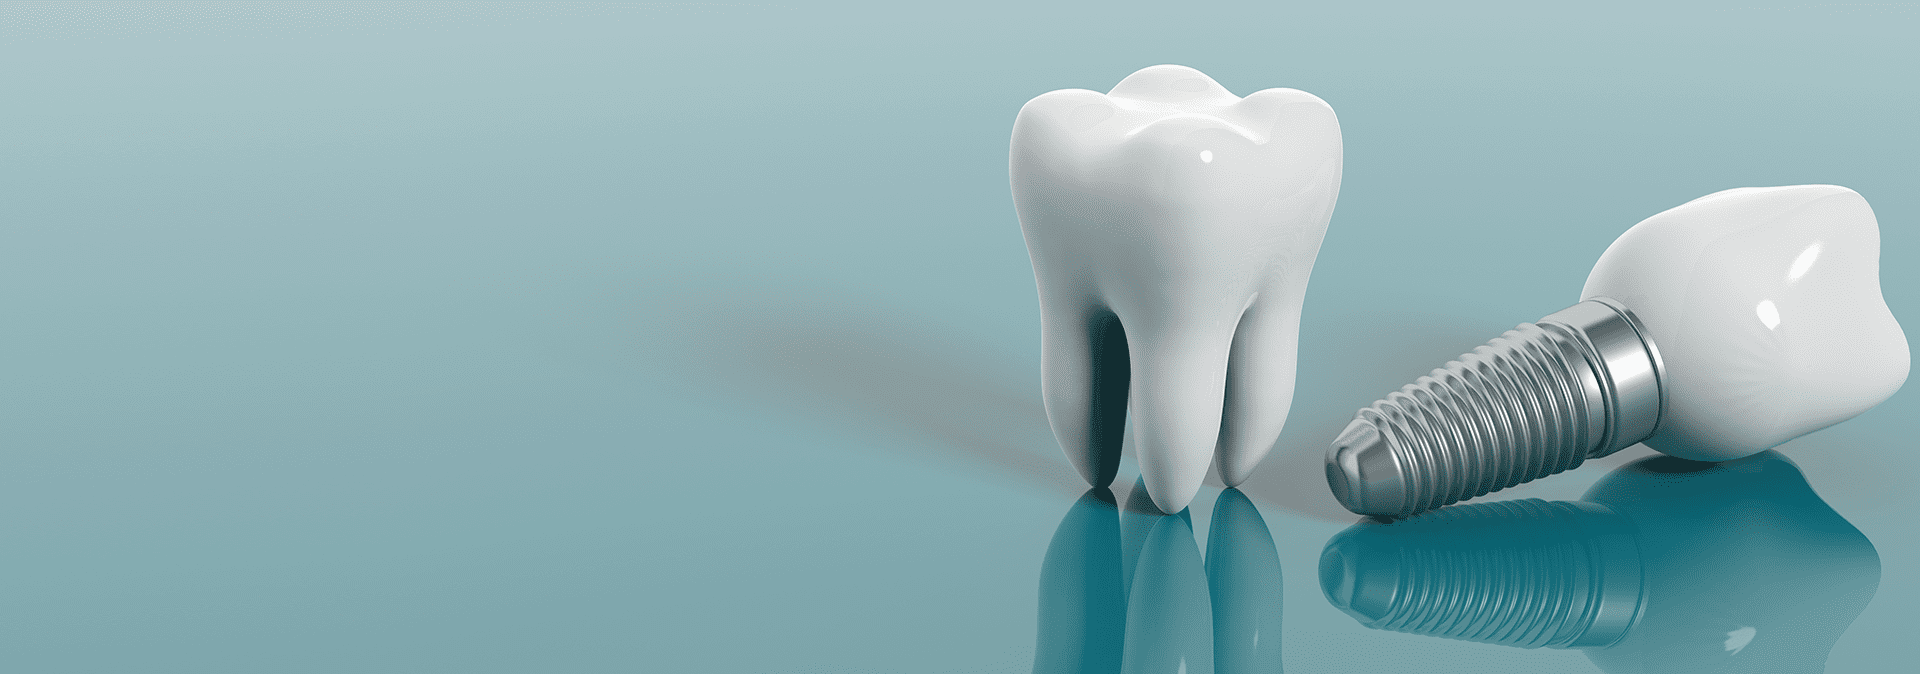 Image numérique d'une dent saine et d'un implant dentaire